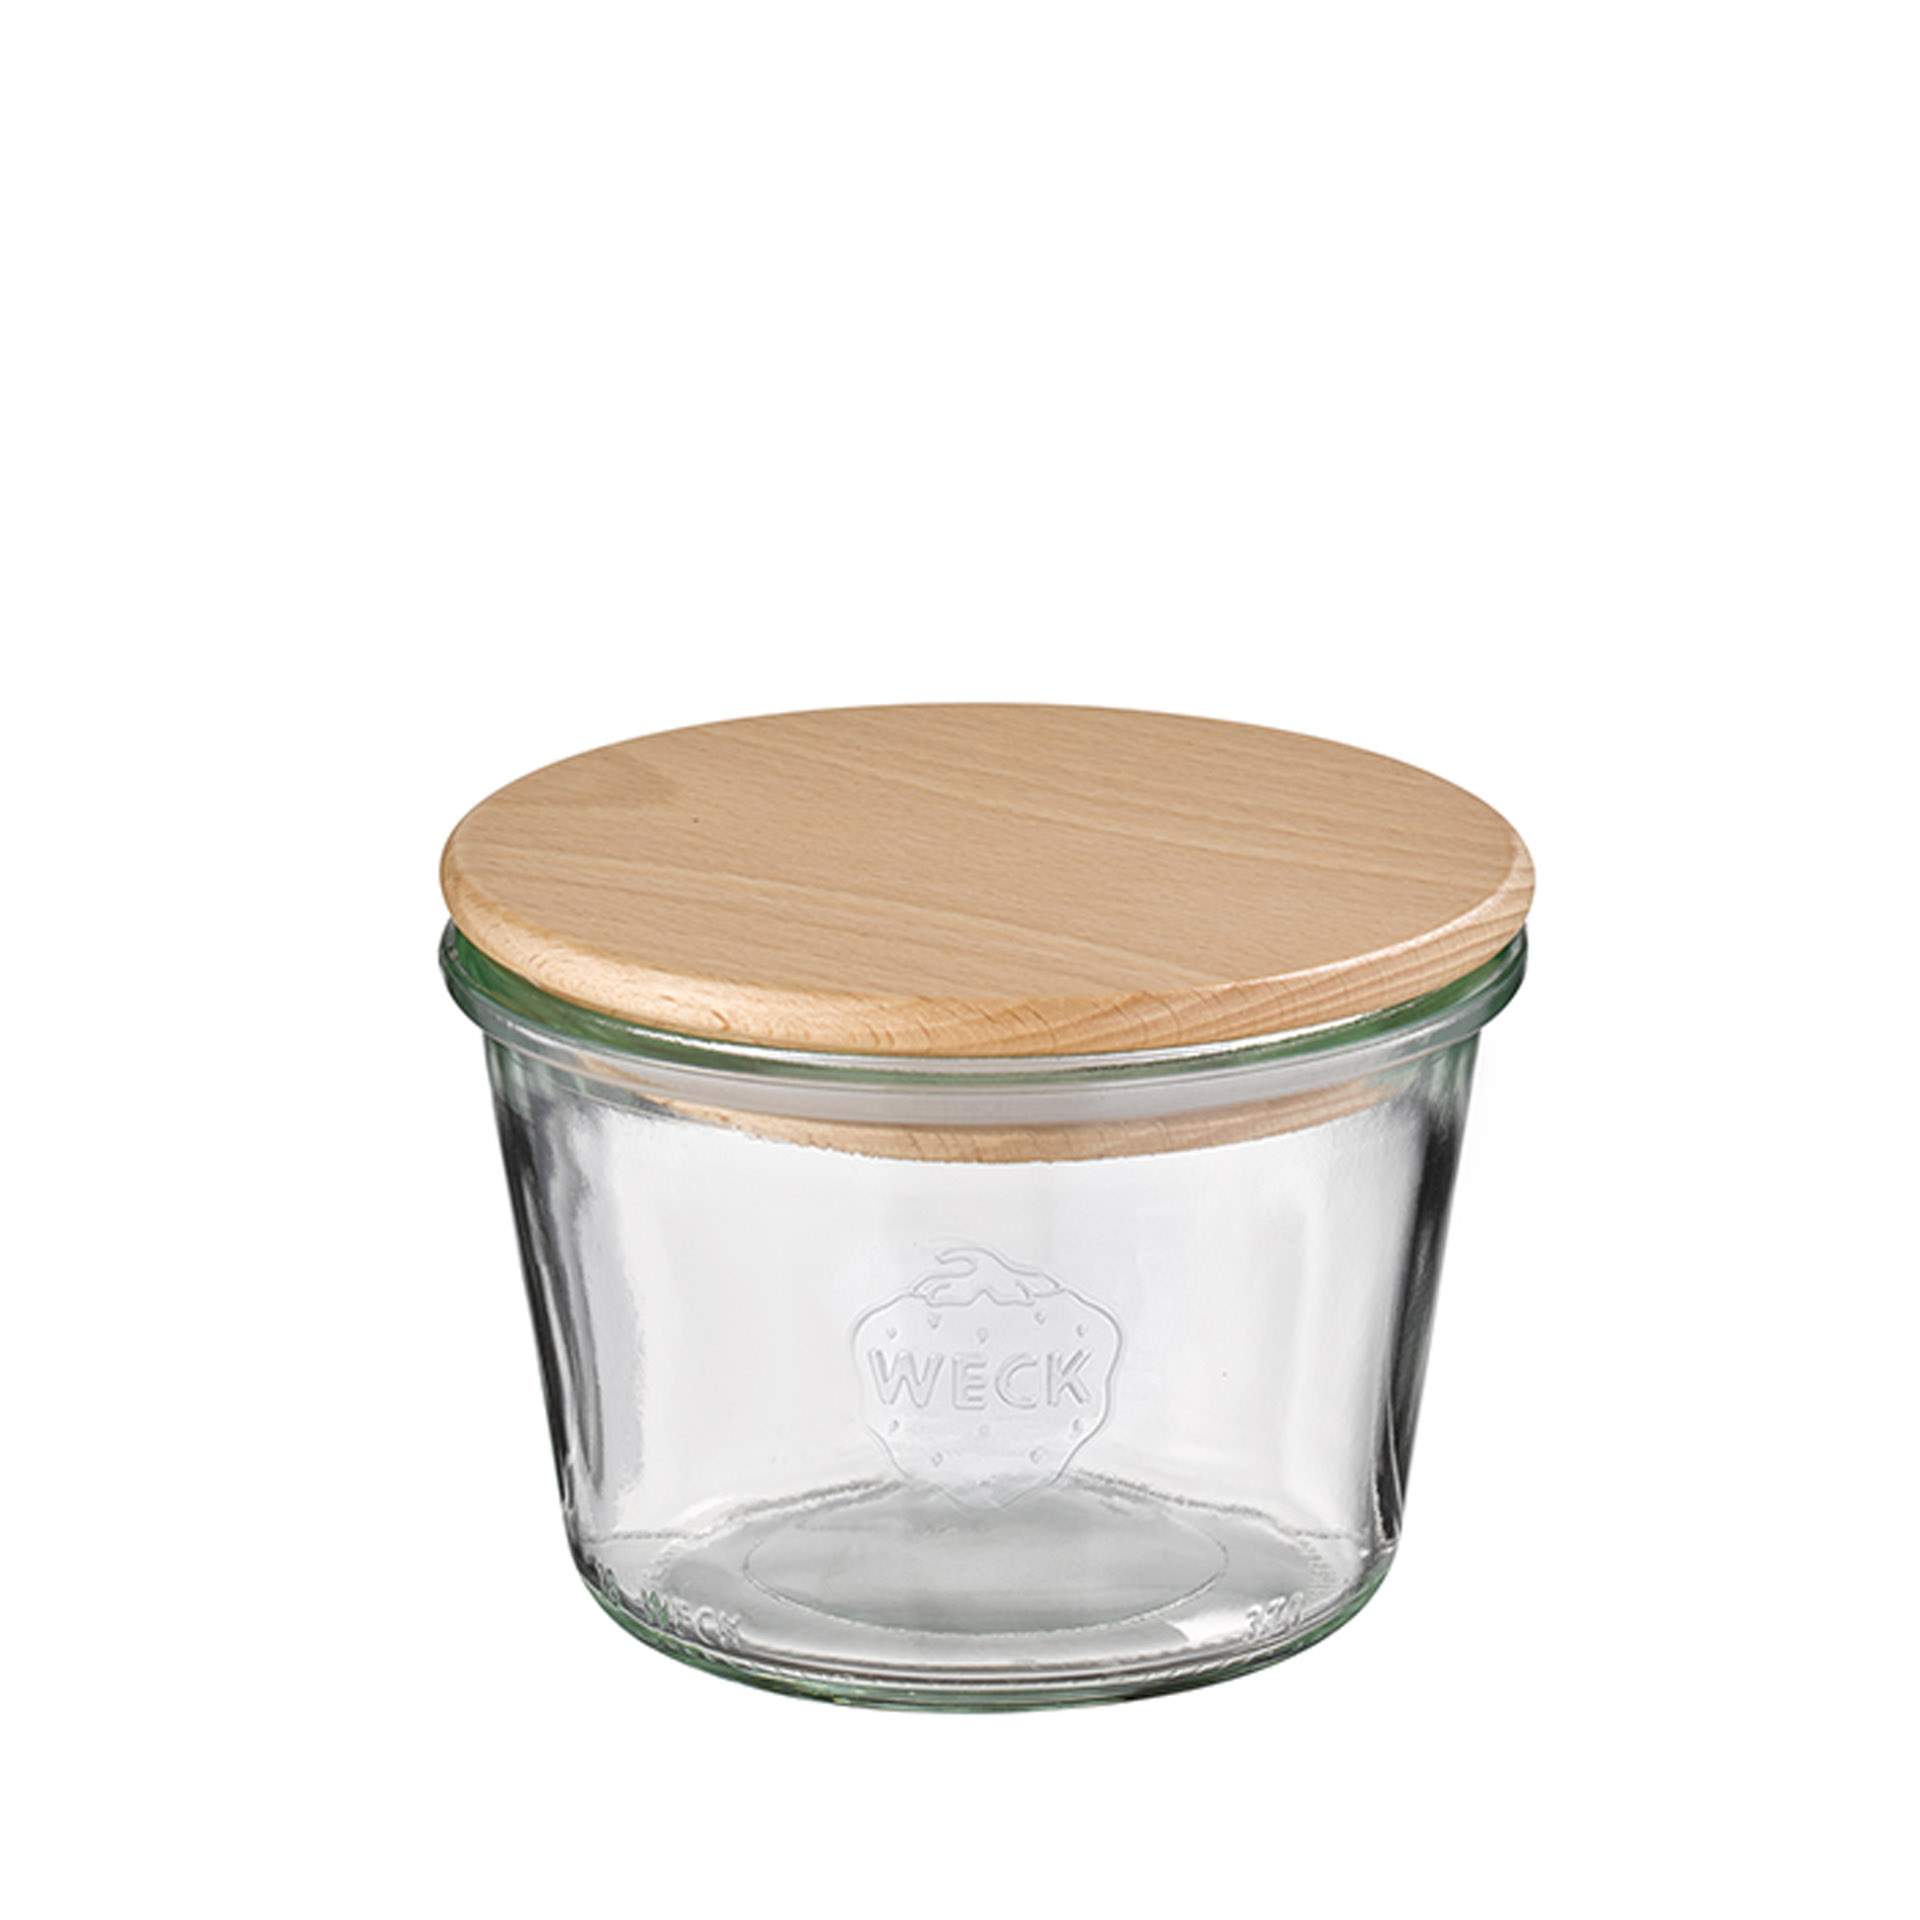 Weck-Glas - mit Deckel - Höhe 7,5 cm - Ø 11 cm - Inhalt 0,37 l - Glas - 82243-B